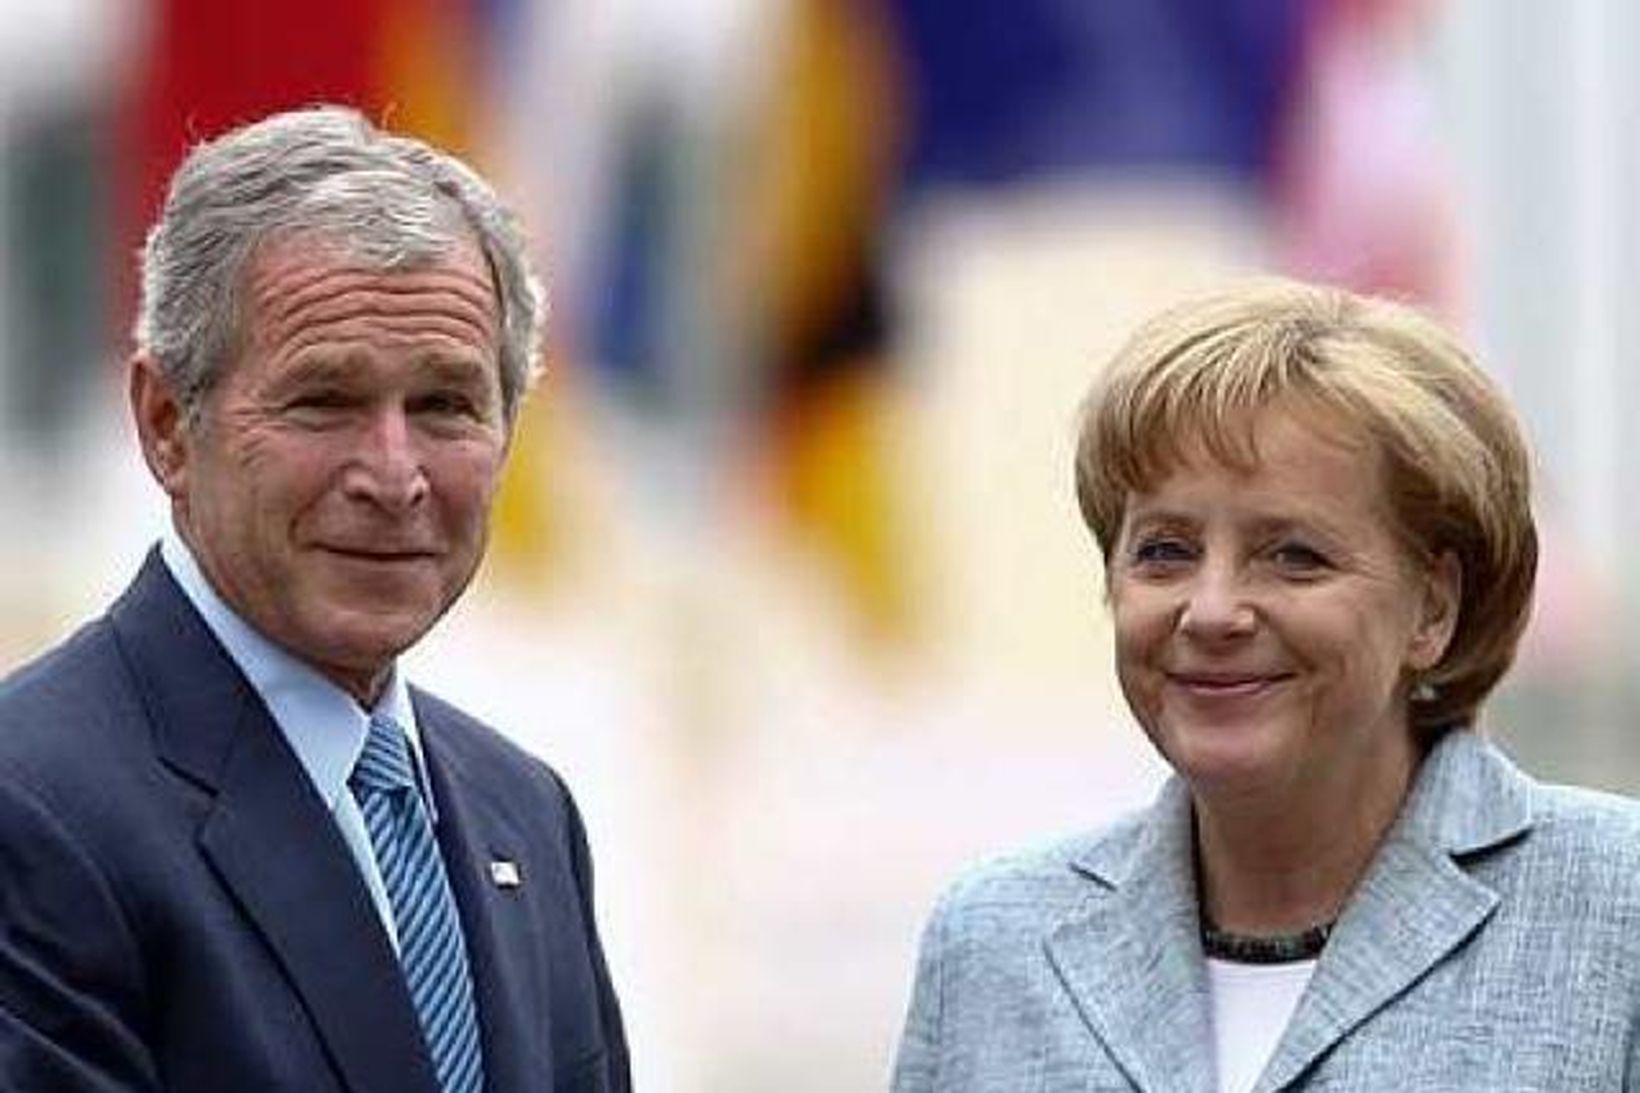 George W. Bush, forseti Bandaríkjanna og Angela Merkel, kanslari Þýskalands, …